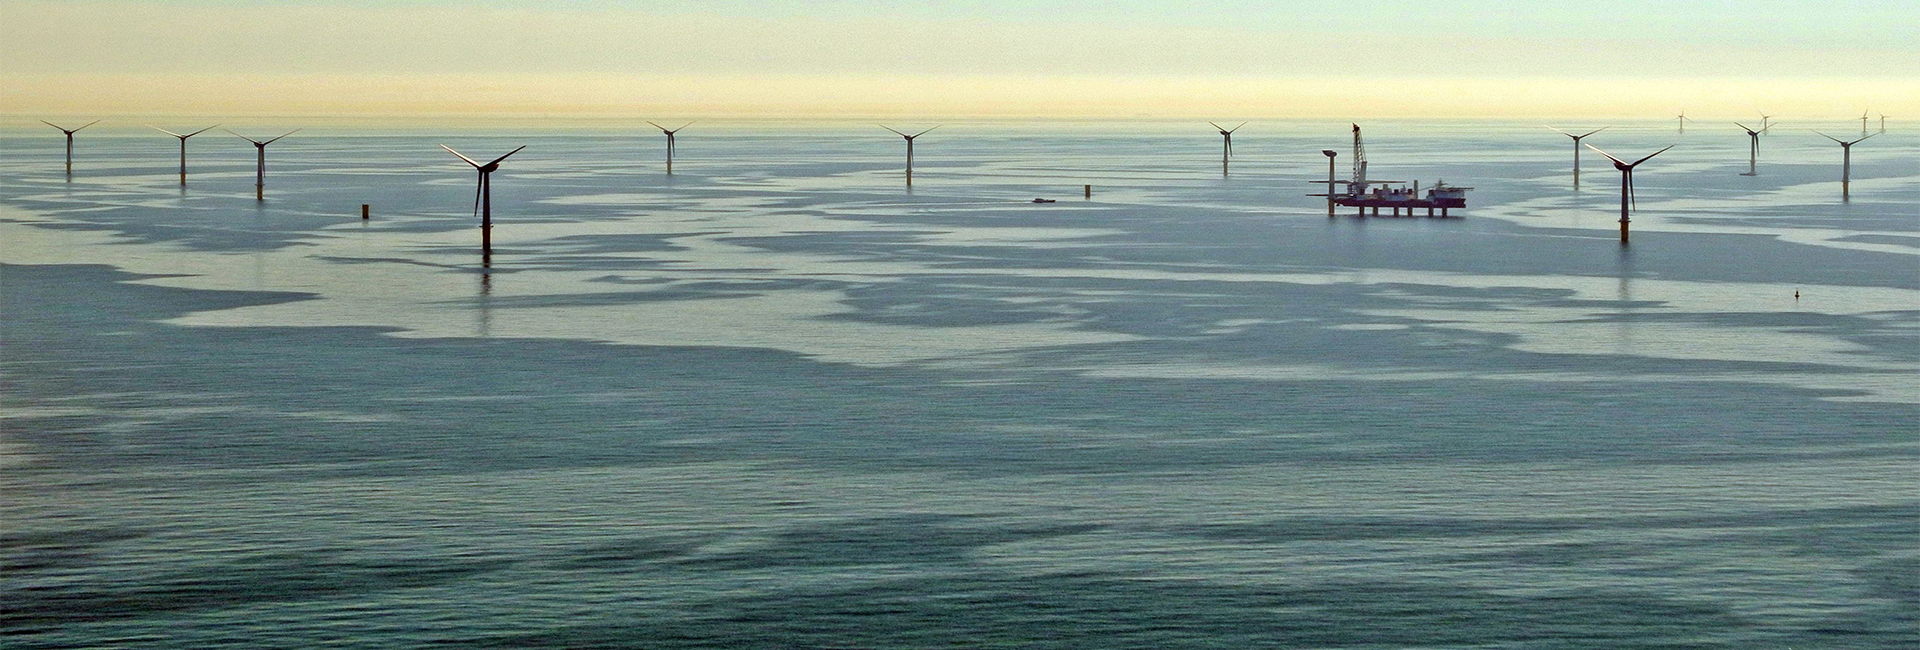 Offshore Wind farm in the North Sea; Photo: Sabine Billerbeck